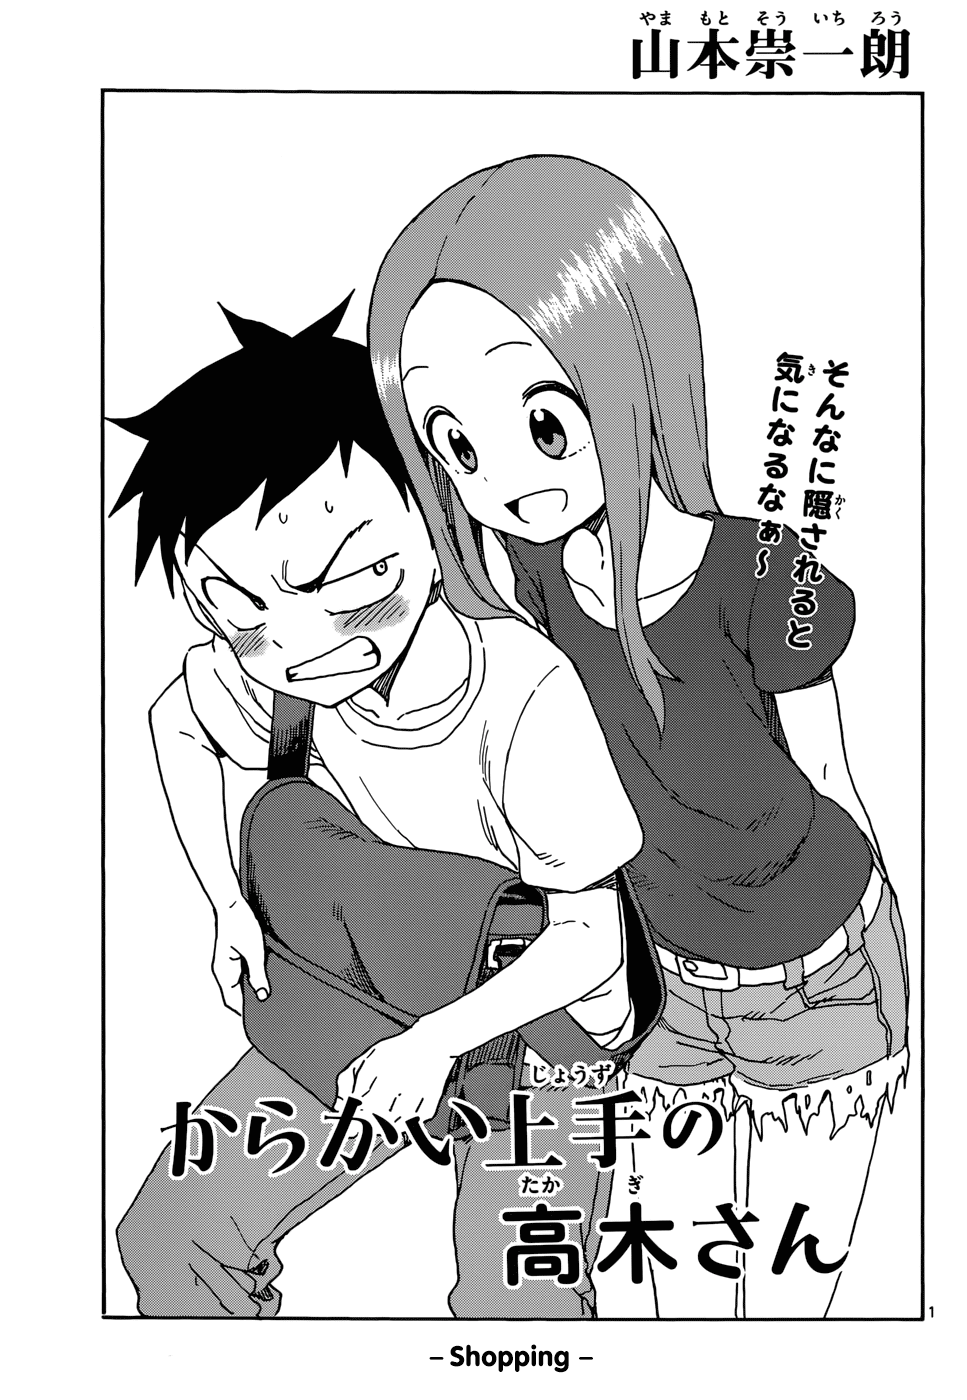 DISC]Karakai Jouzu Takagi-san Chapter 33 : r/manga